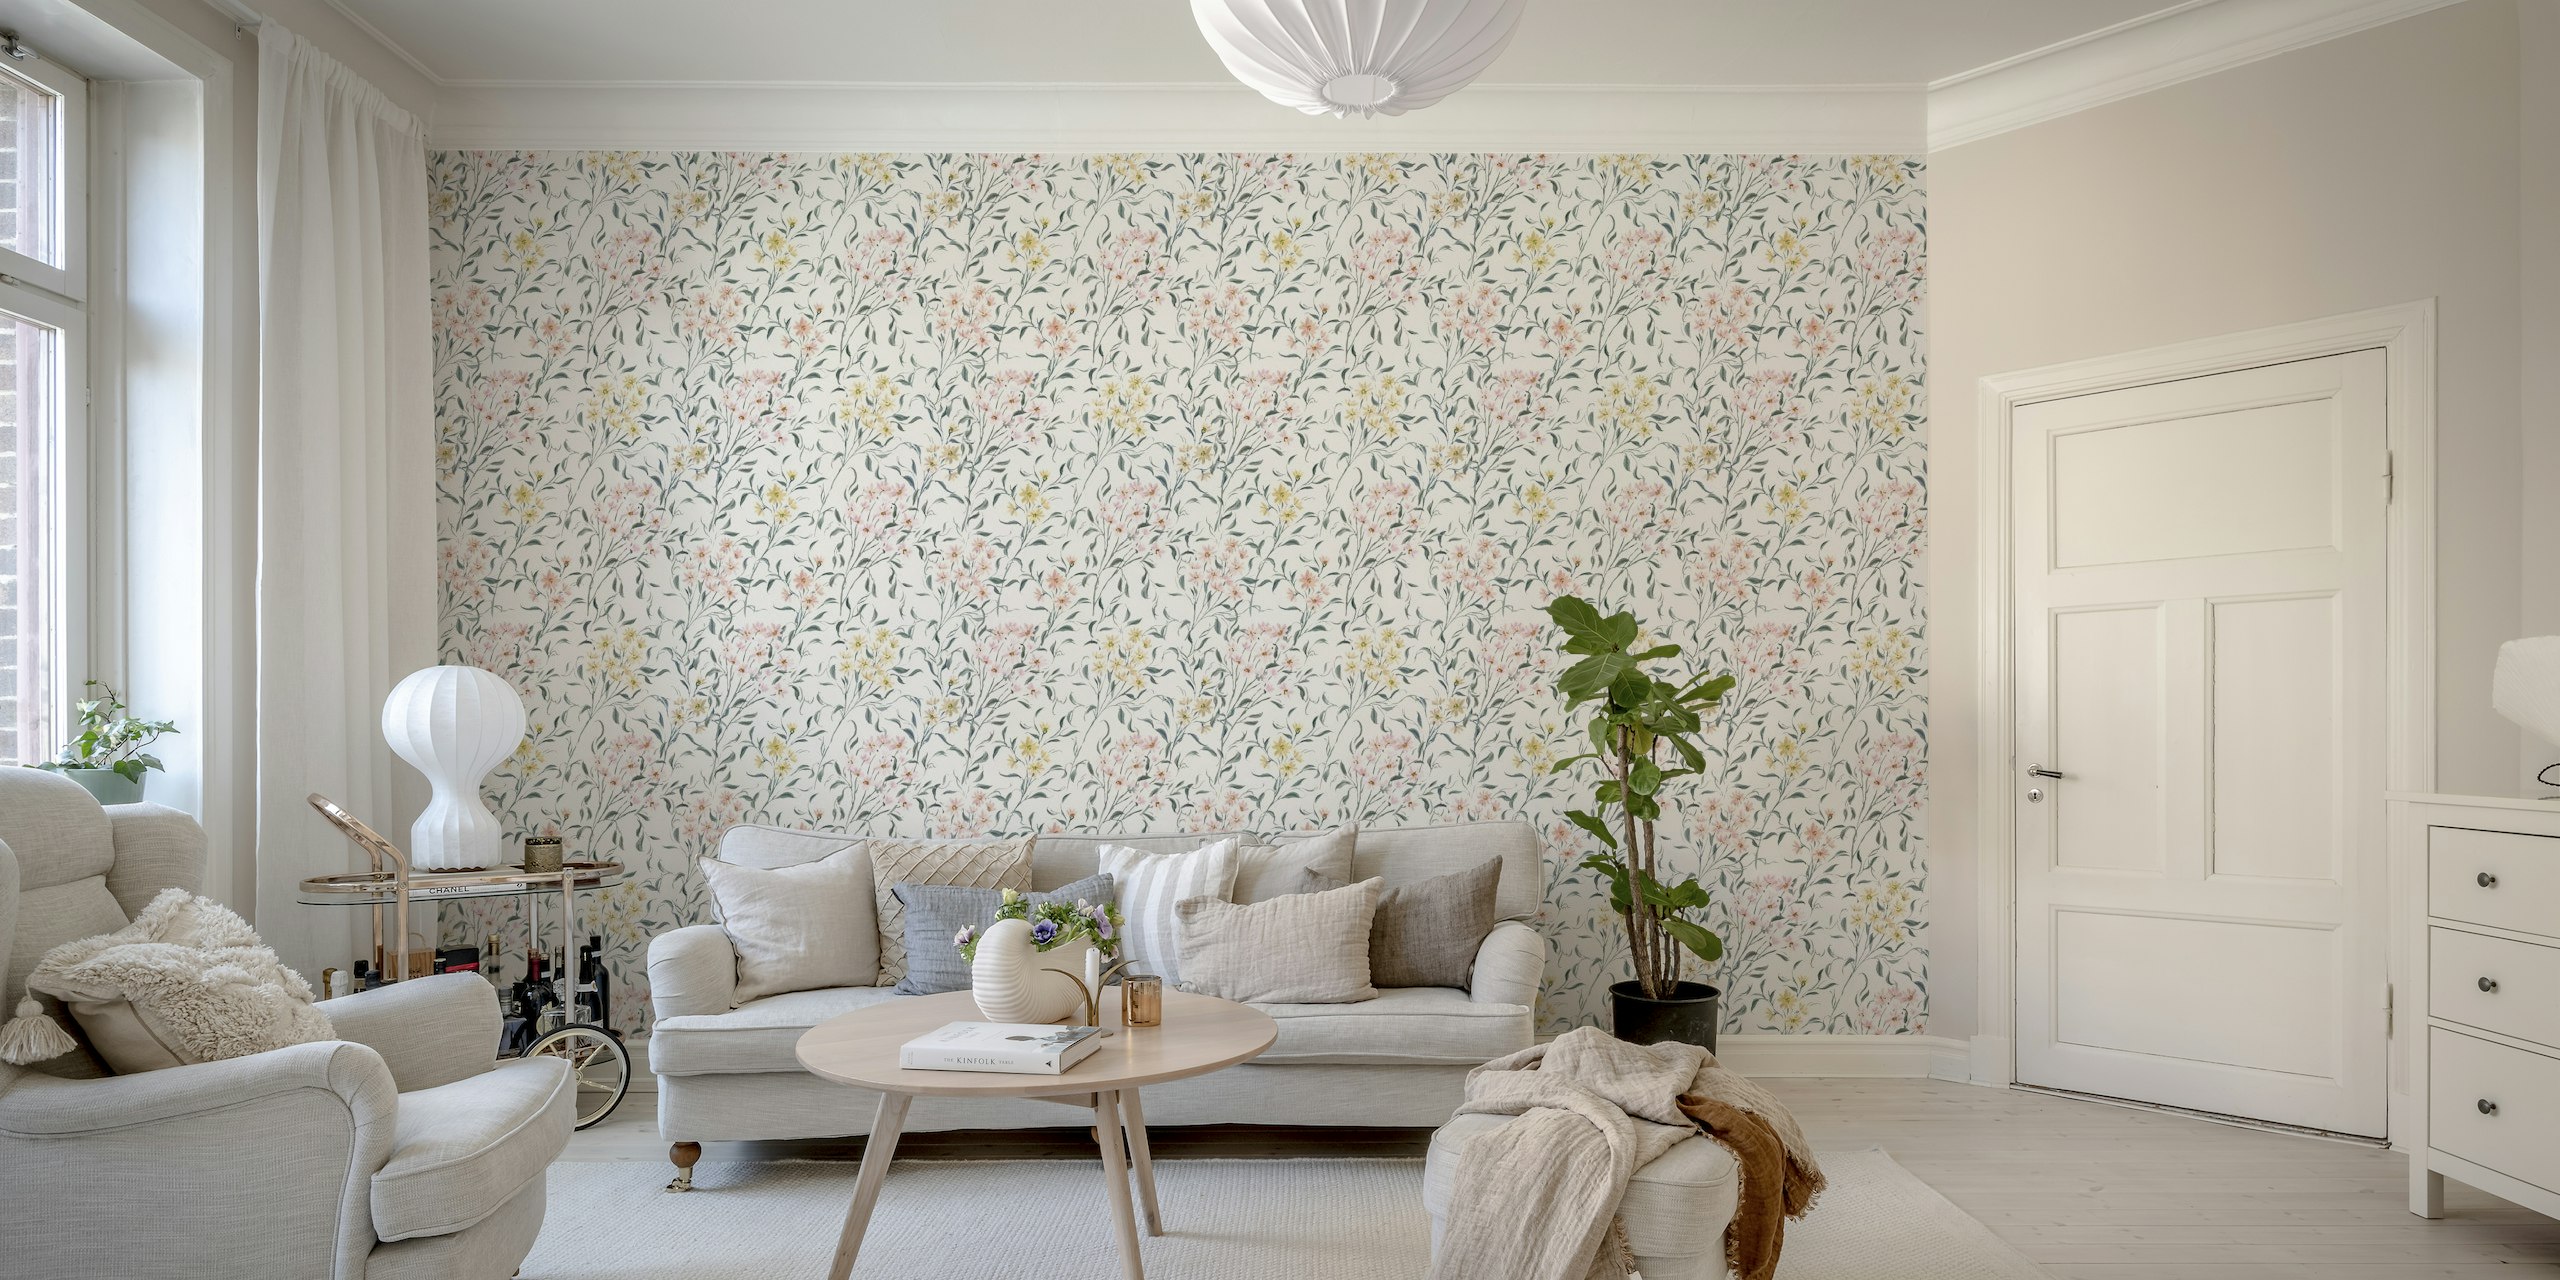 Wildblumenwiese wallpaper